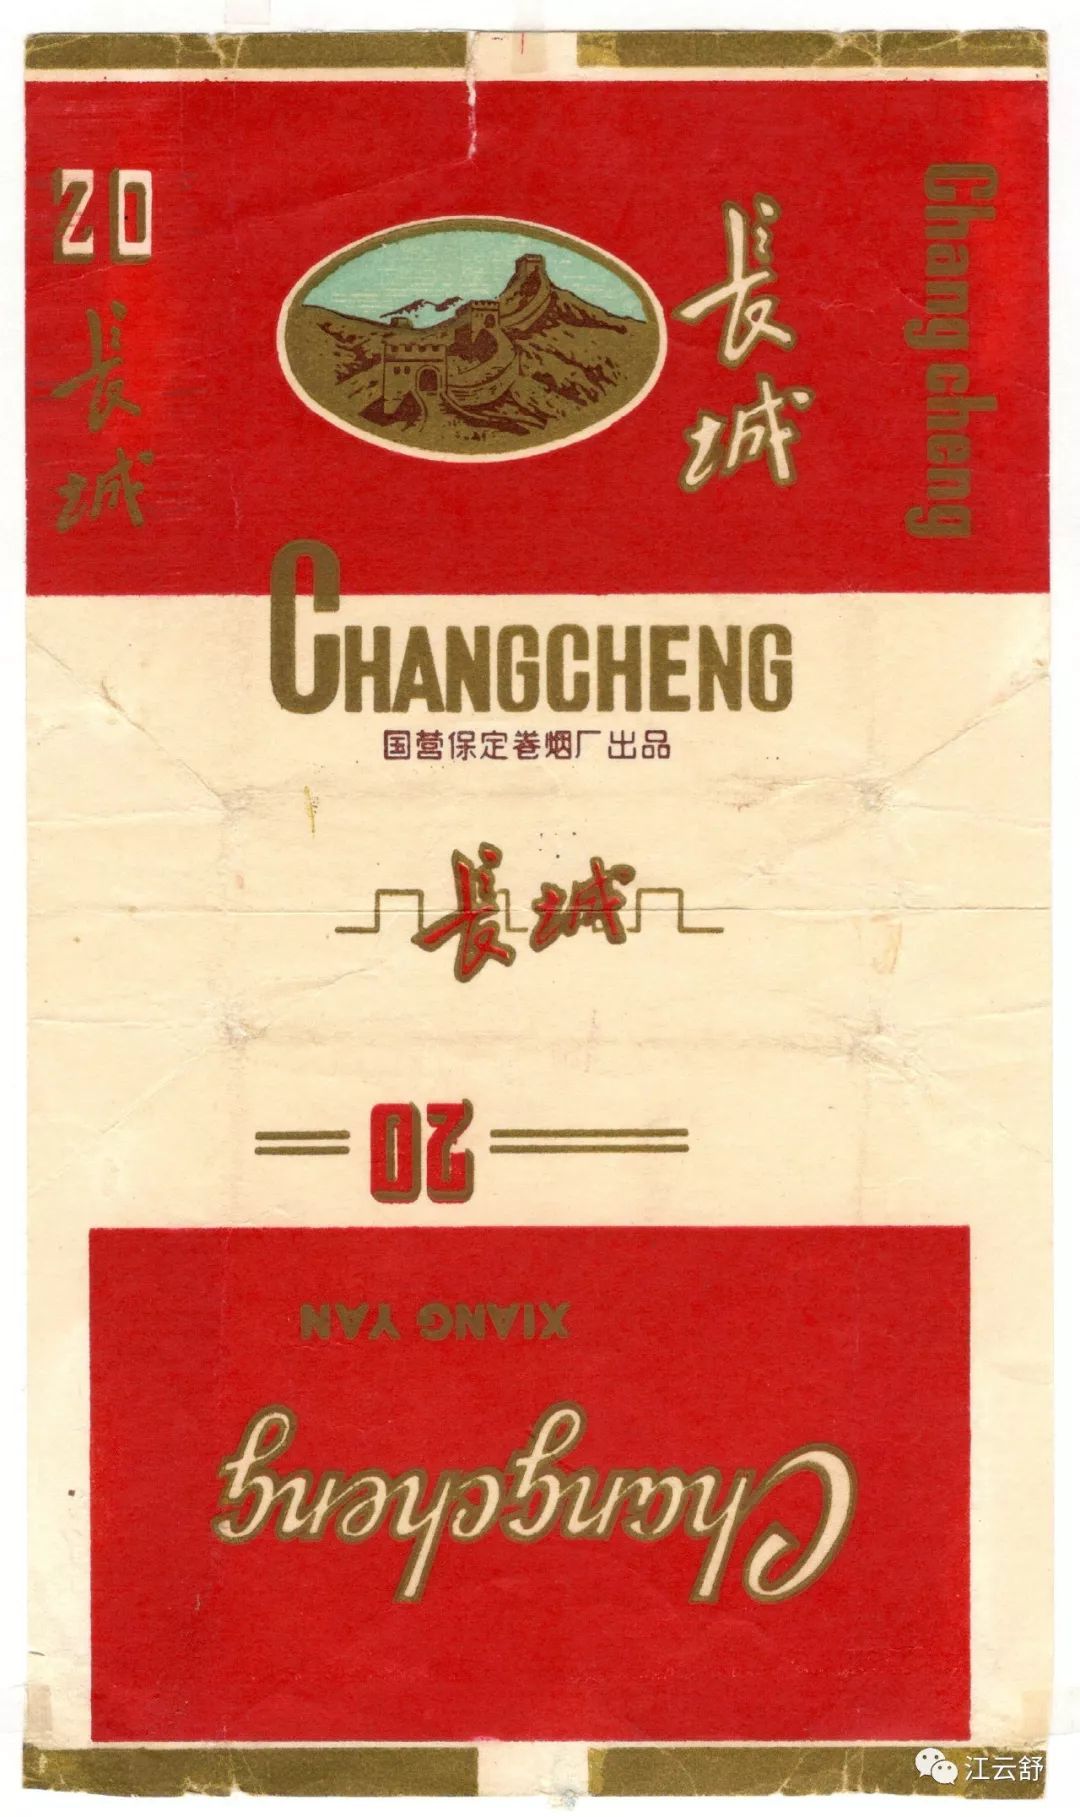 搜集烟标图片分享：长江 长江大桥 长城 长虹 长寿花 嫦娥